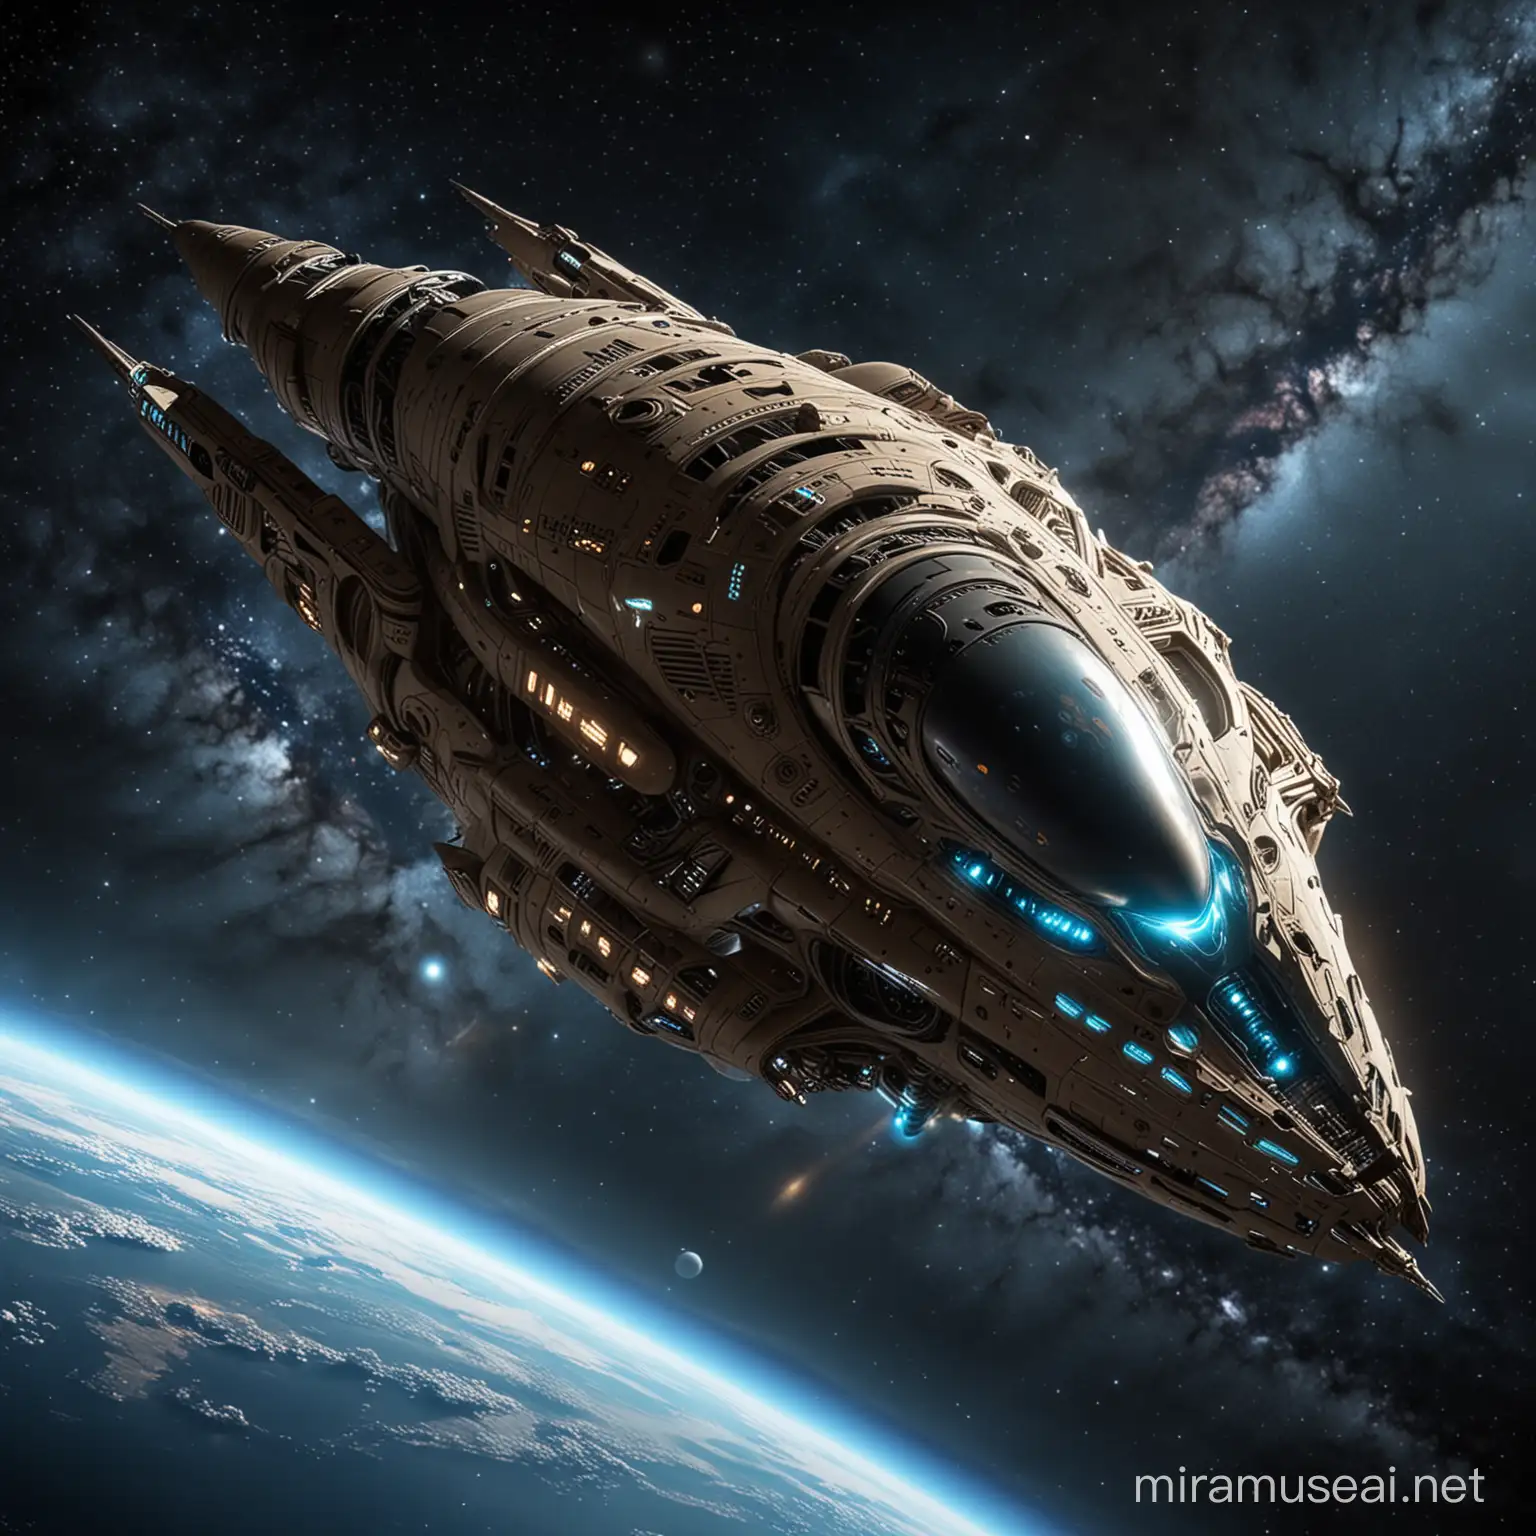 Generate Aliens' Spaceship flying in space

